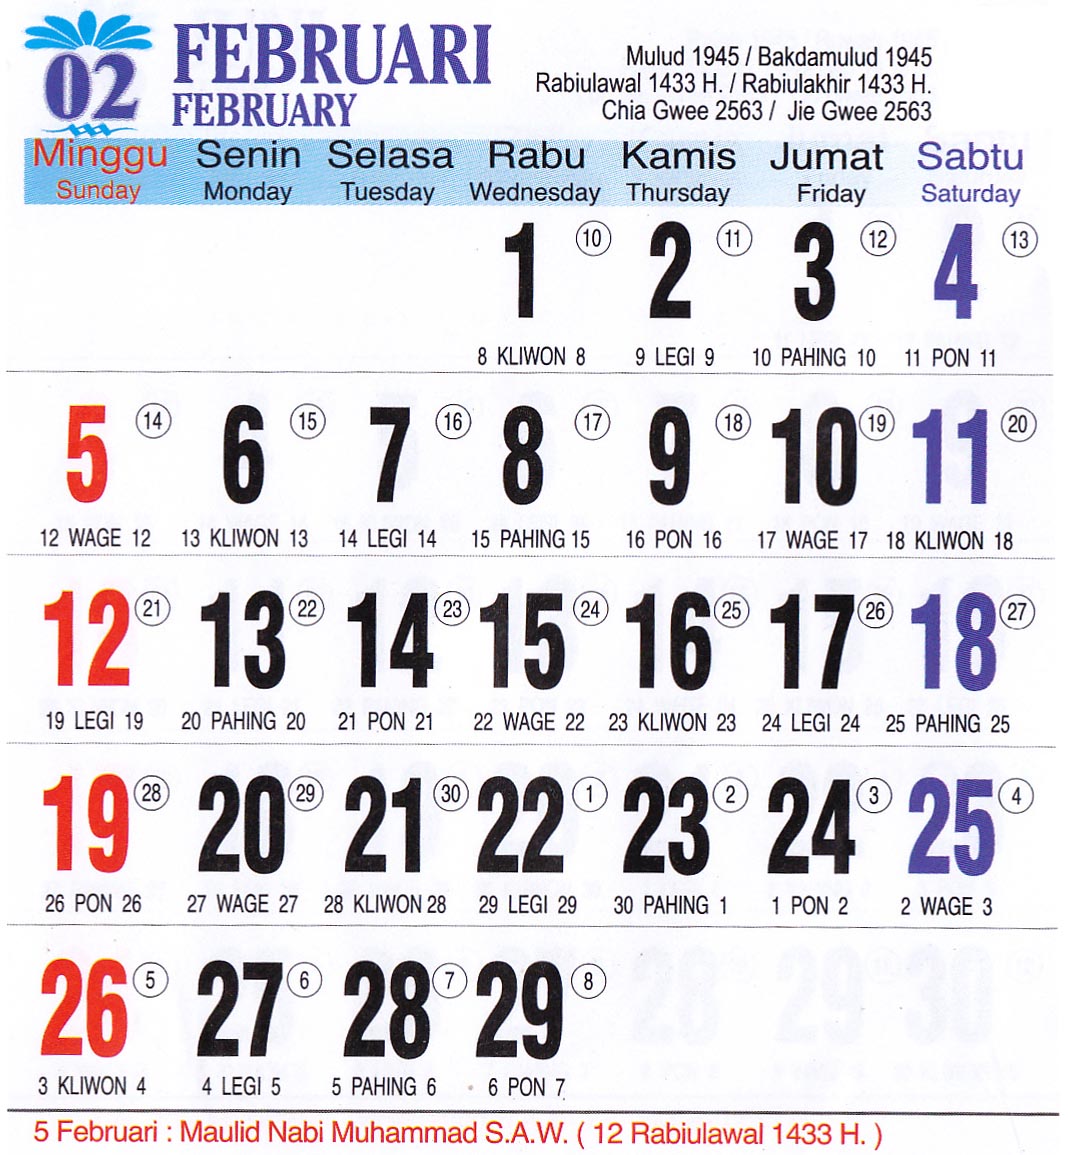 Kalender Jawa Tahun 1990  Search Results  Calendar 2015